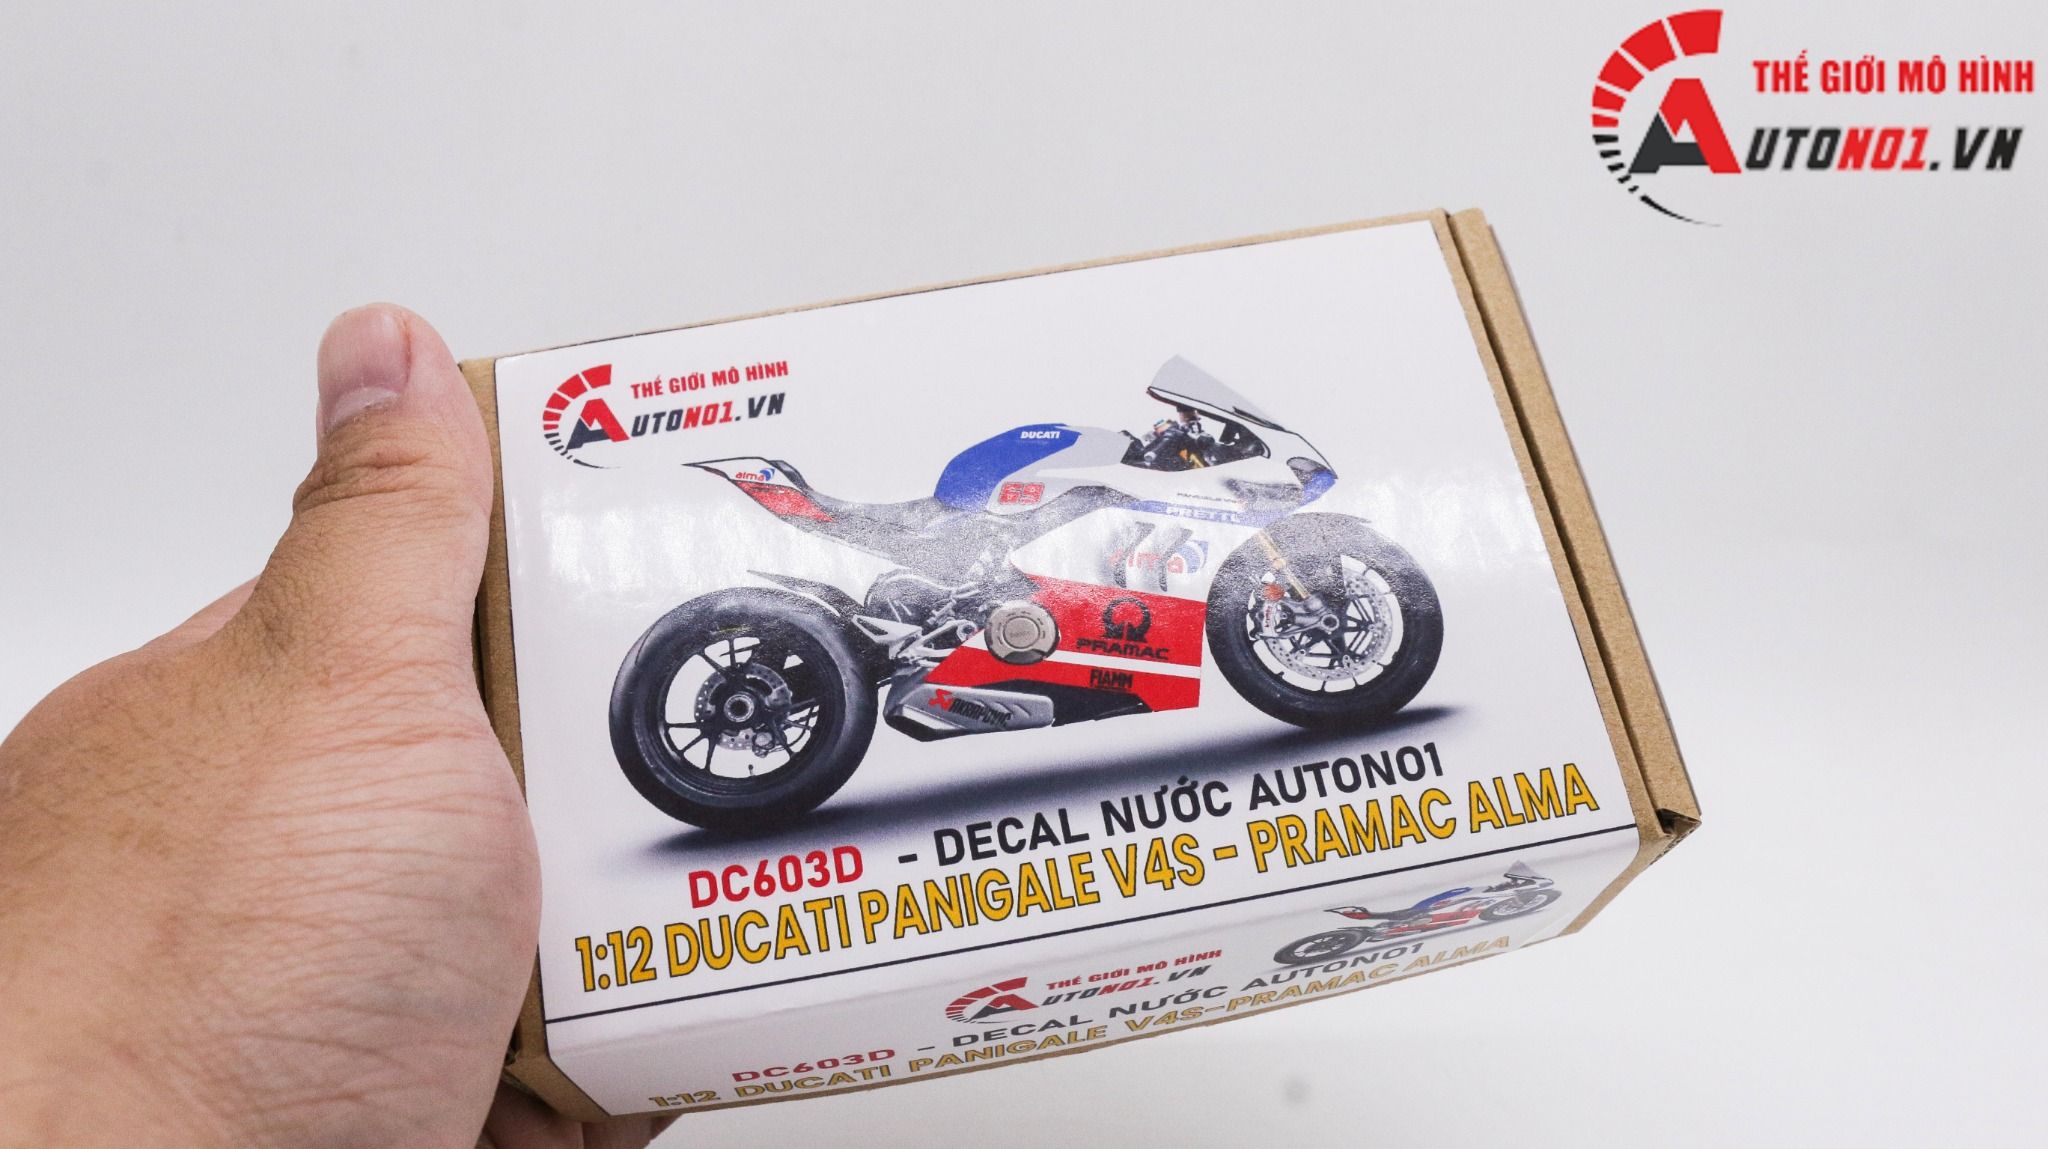  Decal nước độ Ducati Panigale V4S - Pramac Alma tỉ lệ 1:12 Autono1 DC603d 